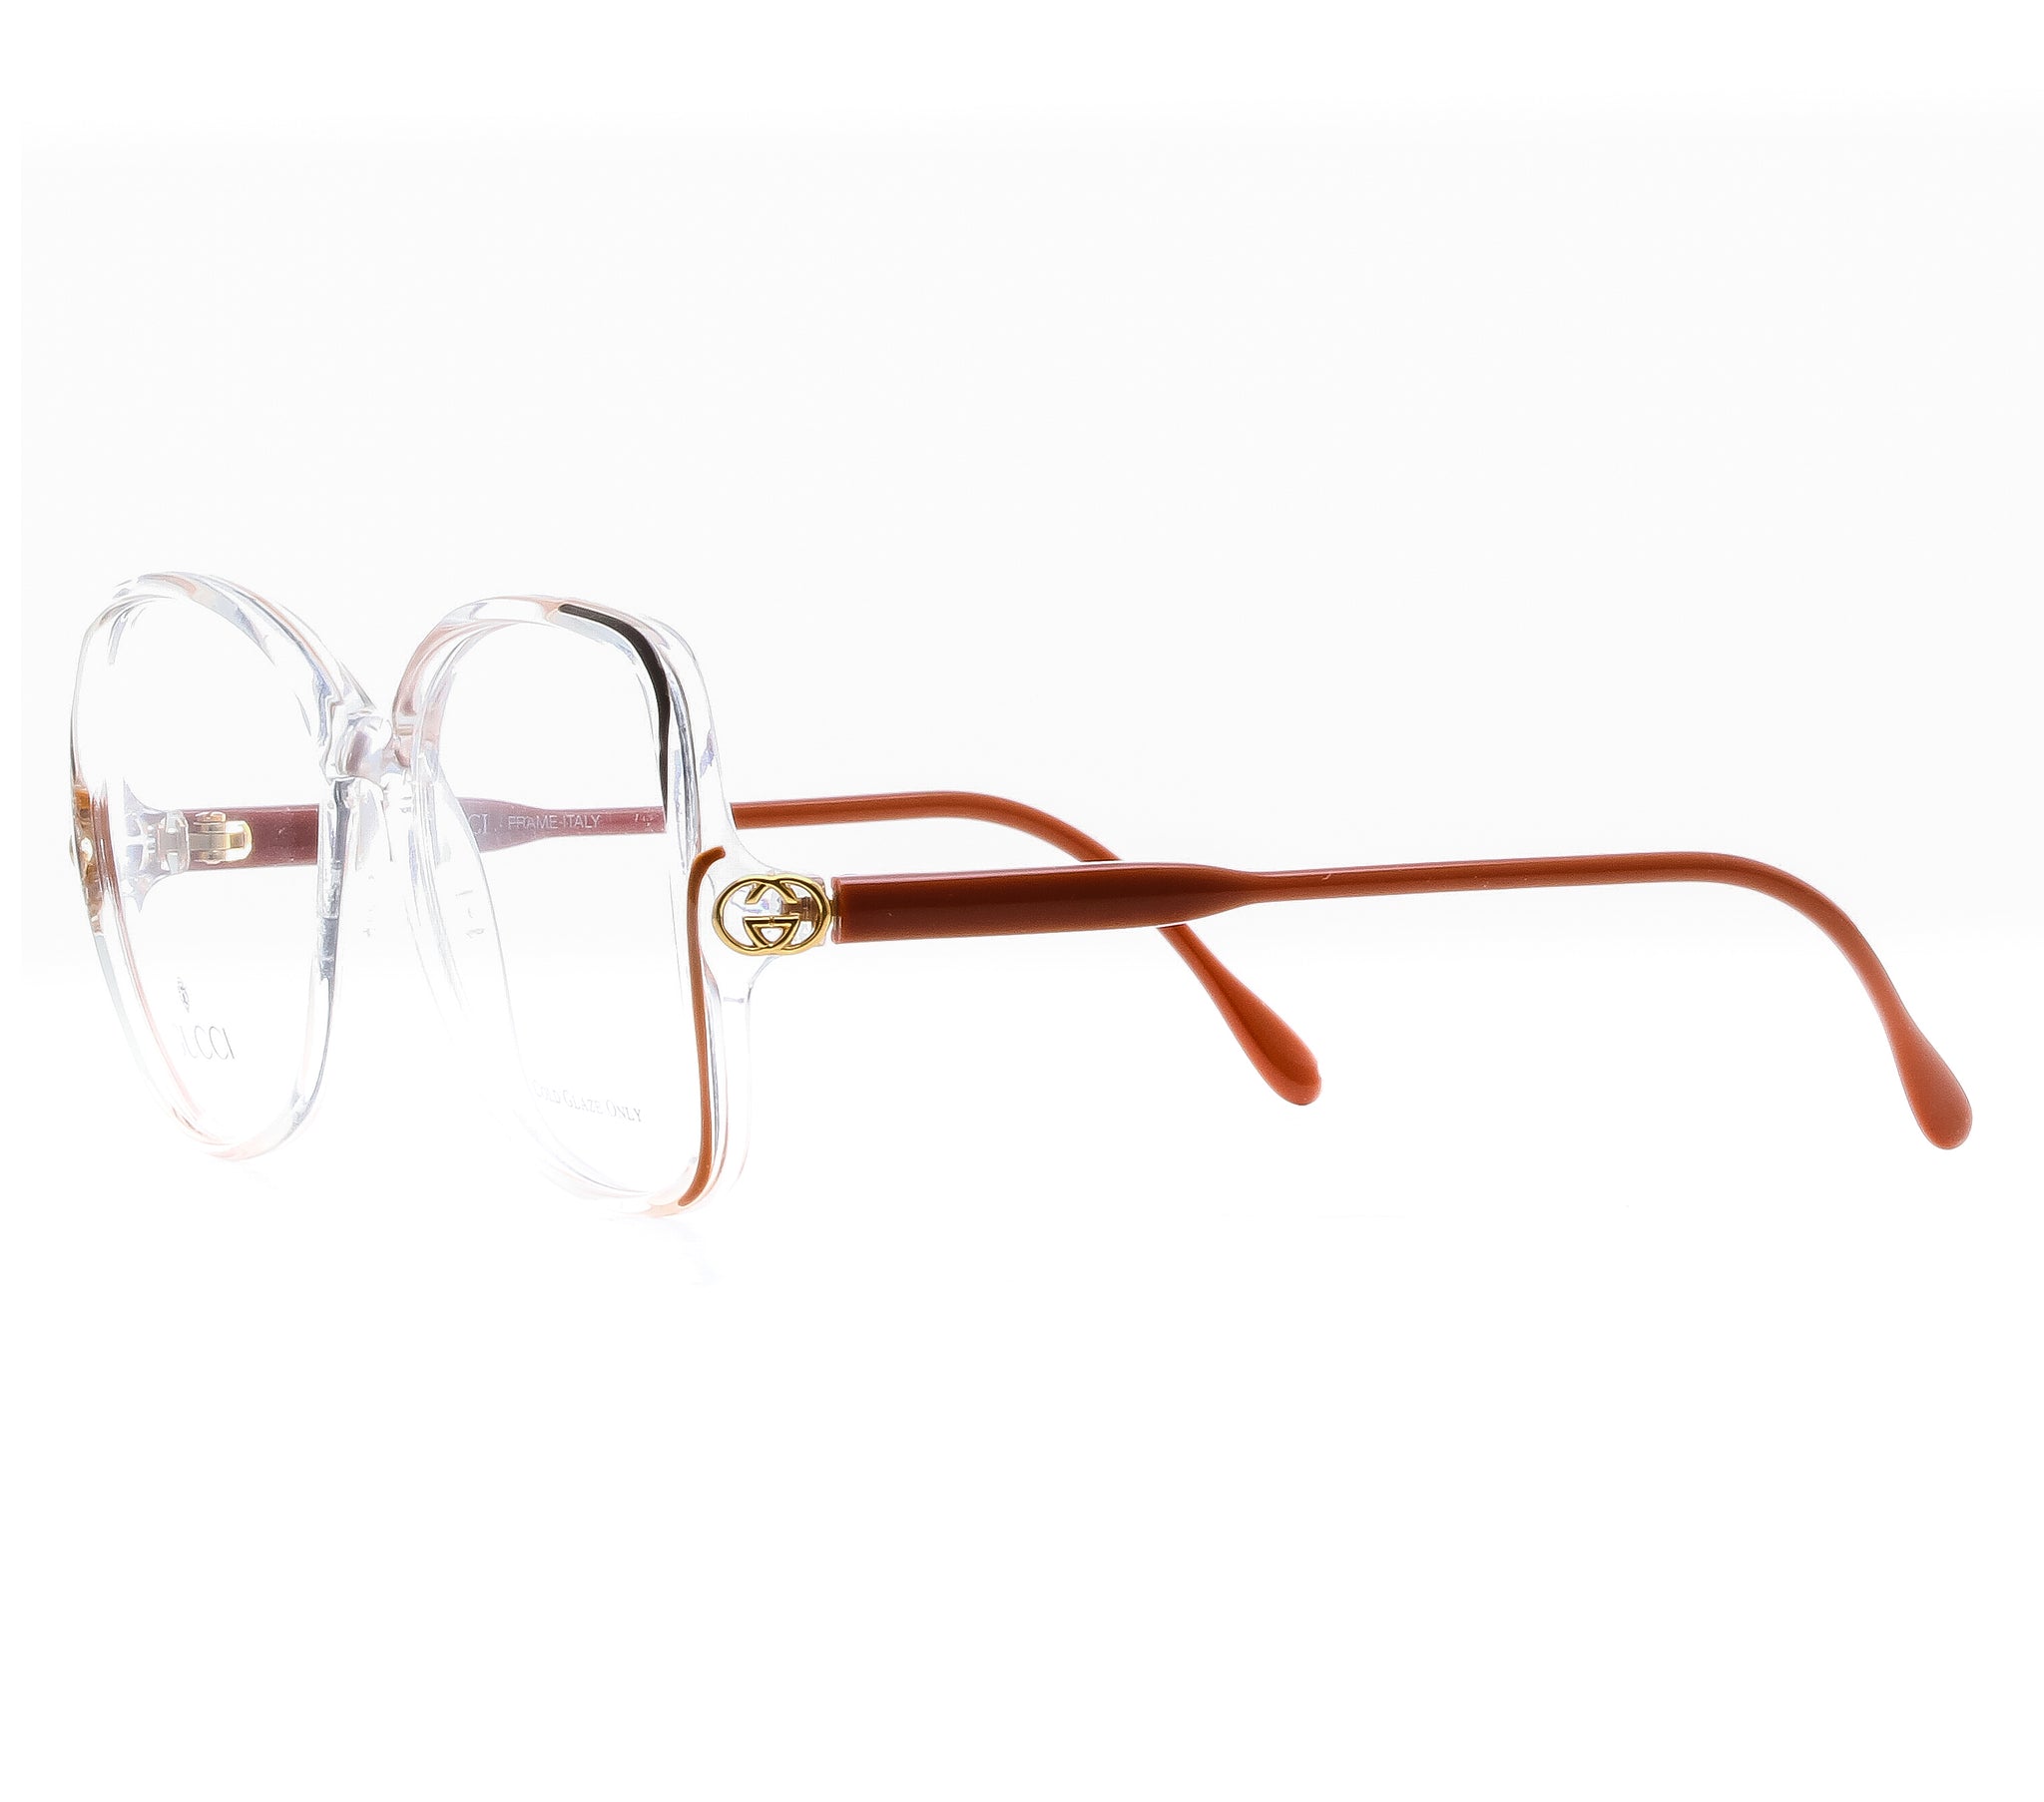 gucci eyeglasses clear